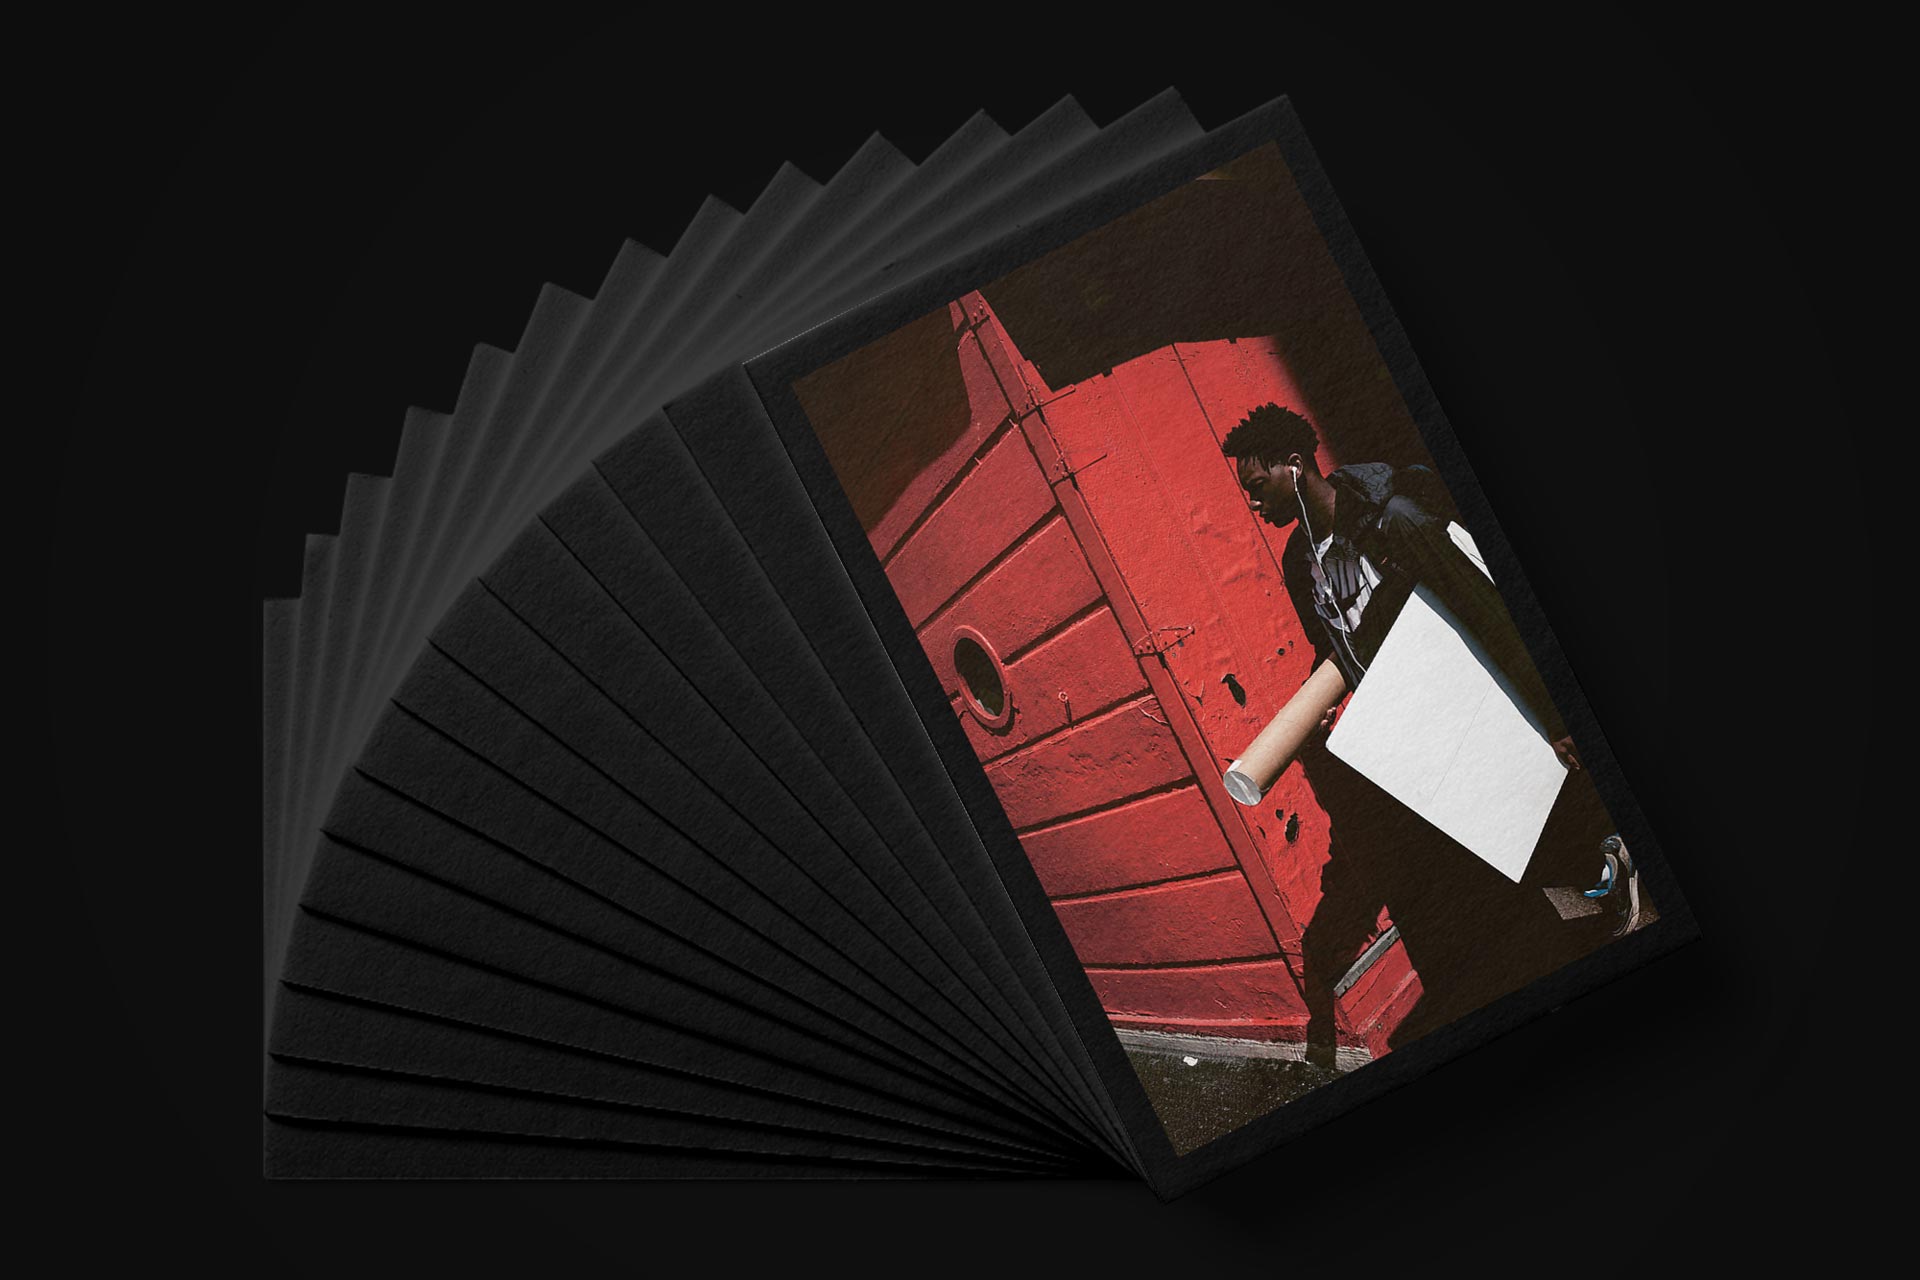 Postkarten für die Ausstellung der Berufsfotografen Vorarlberg – Bernhard Hafele, viergestalten – von Bernhard Hafele